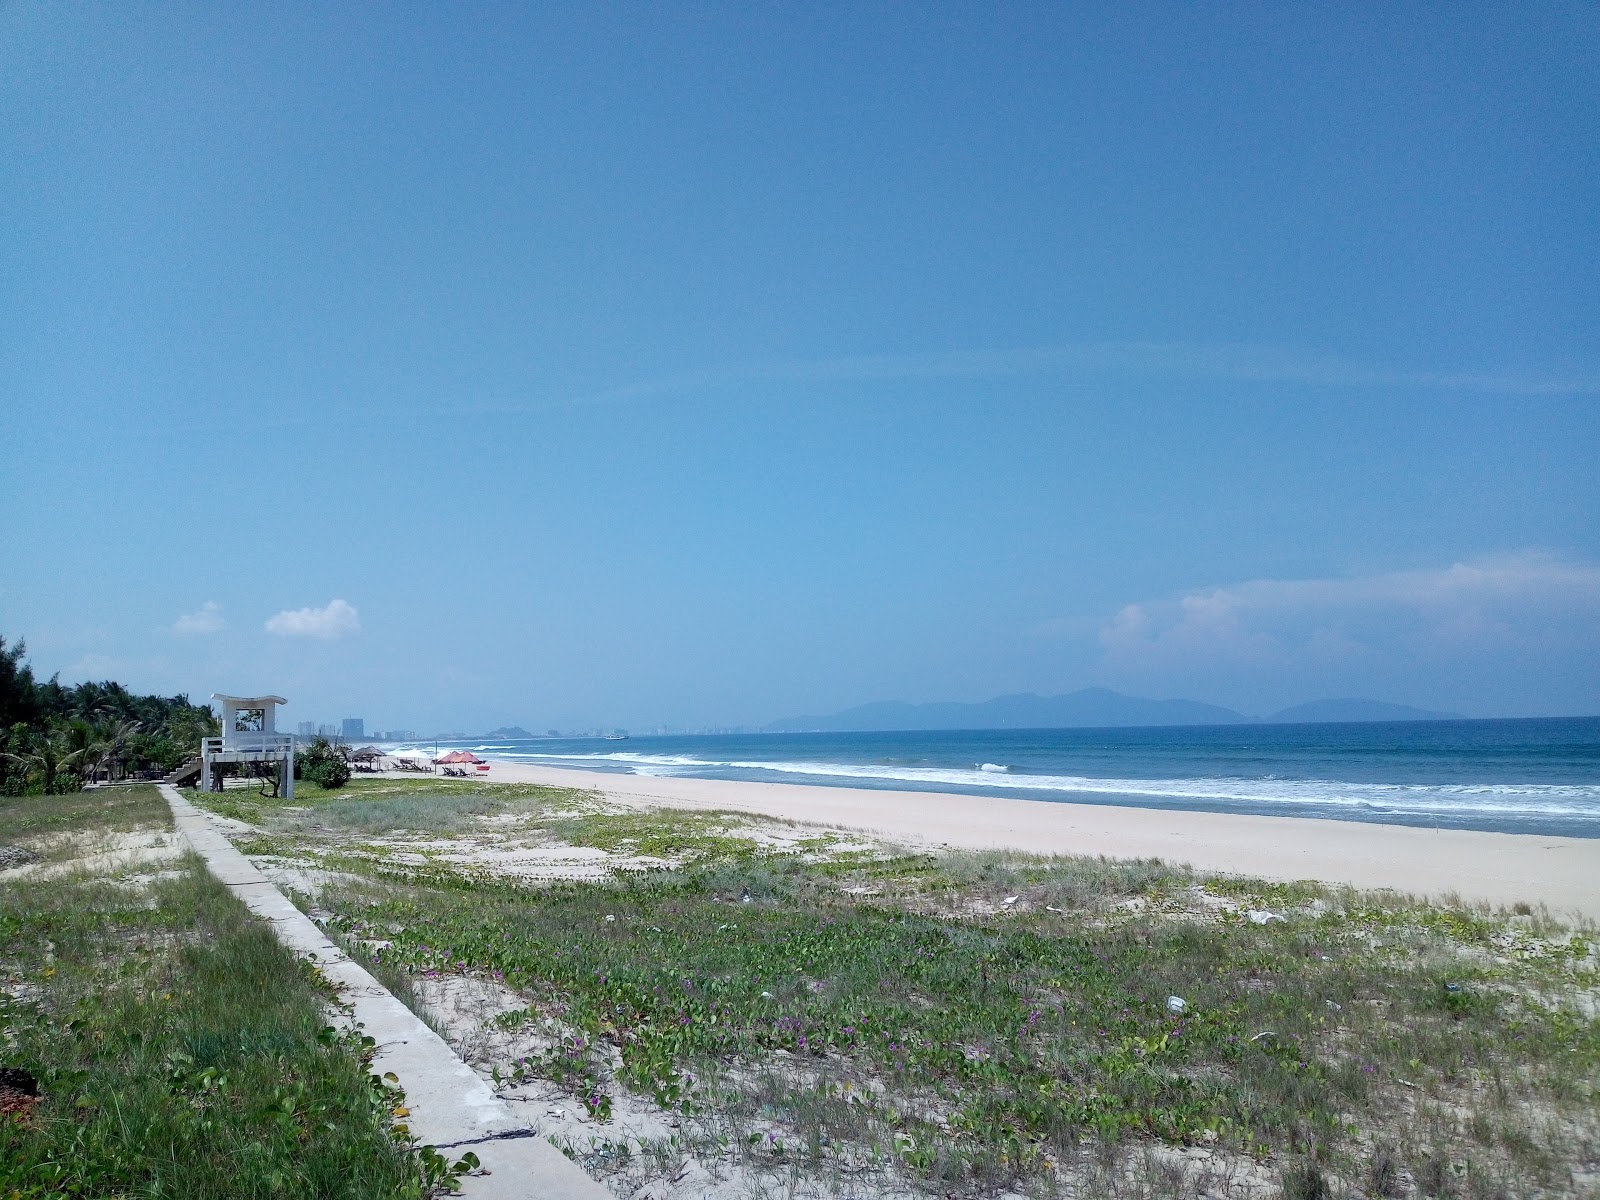 Zdjęcie Ha My Beach - popularne miejsce wśród znawców relaksu